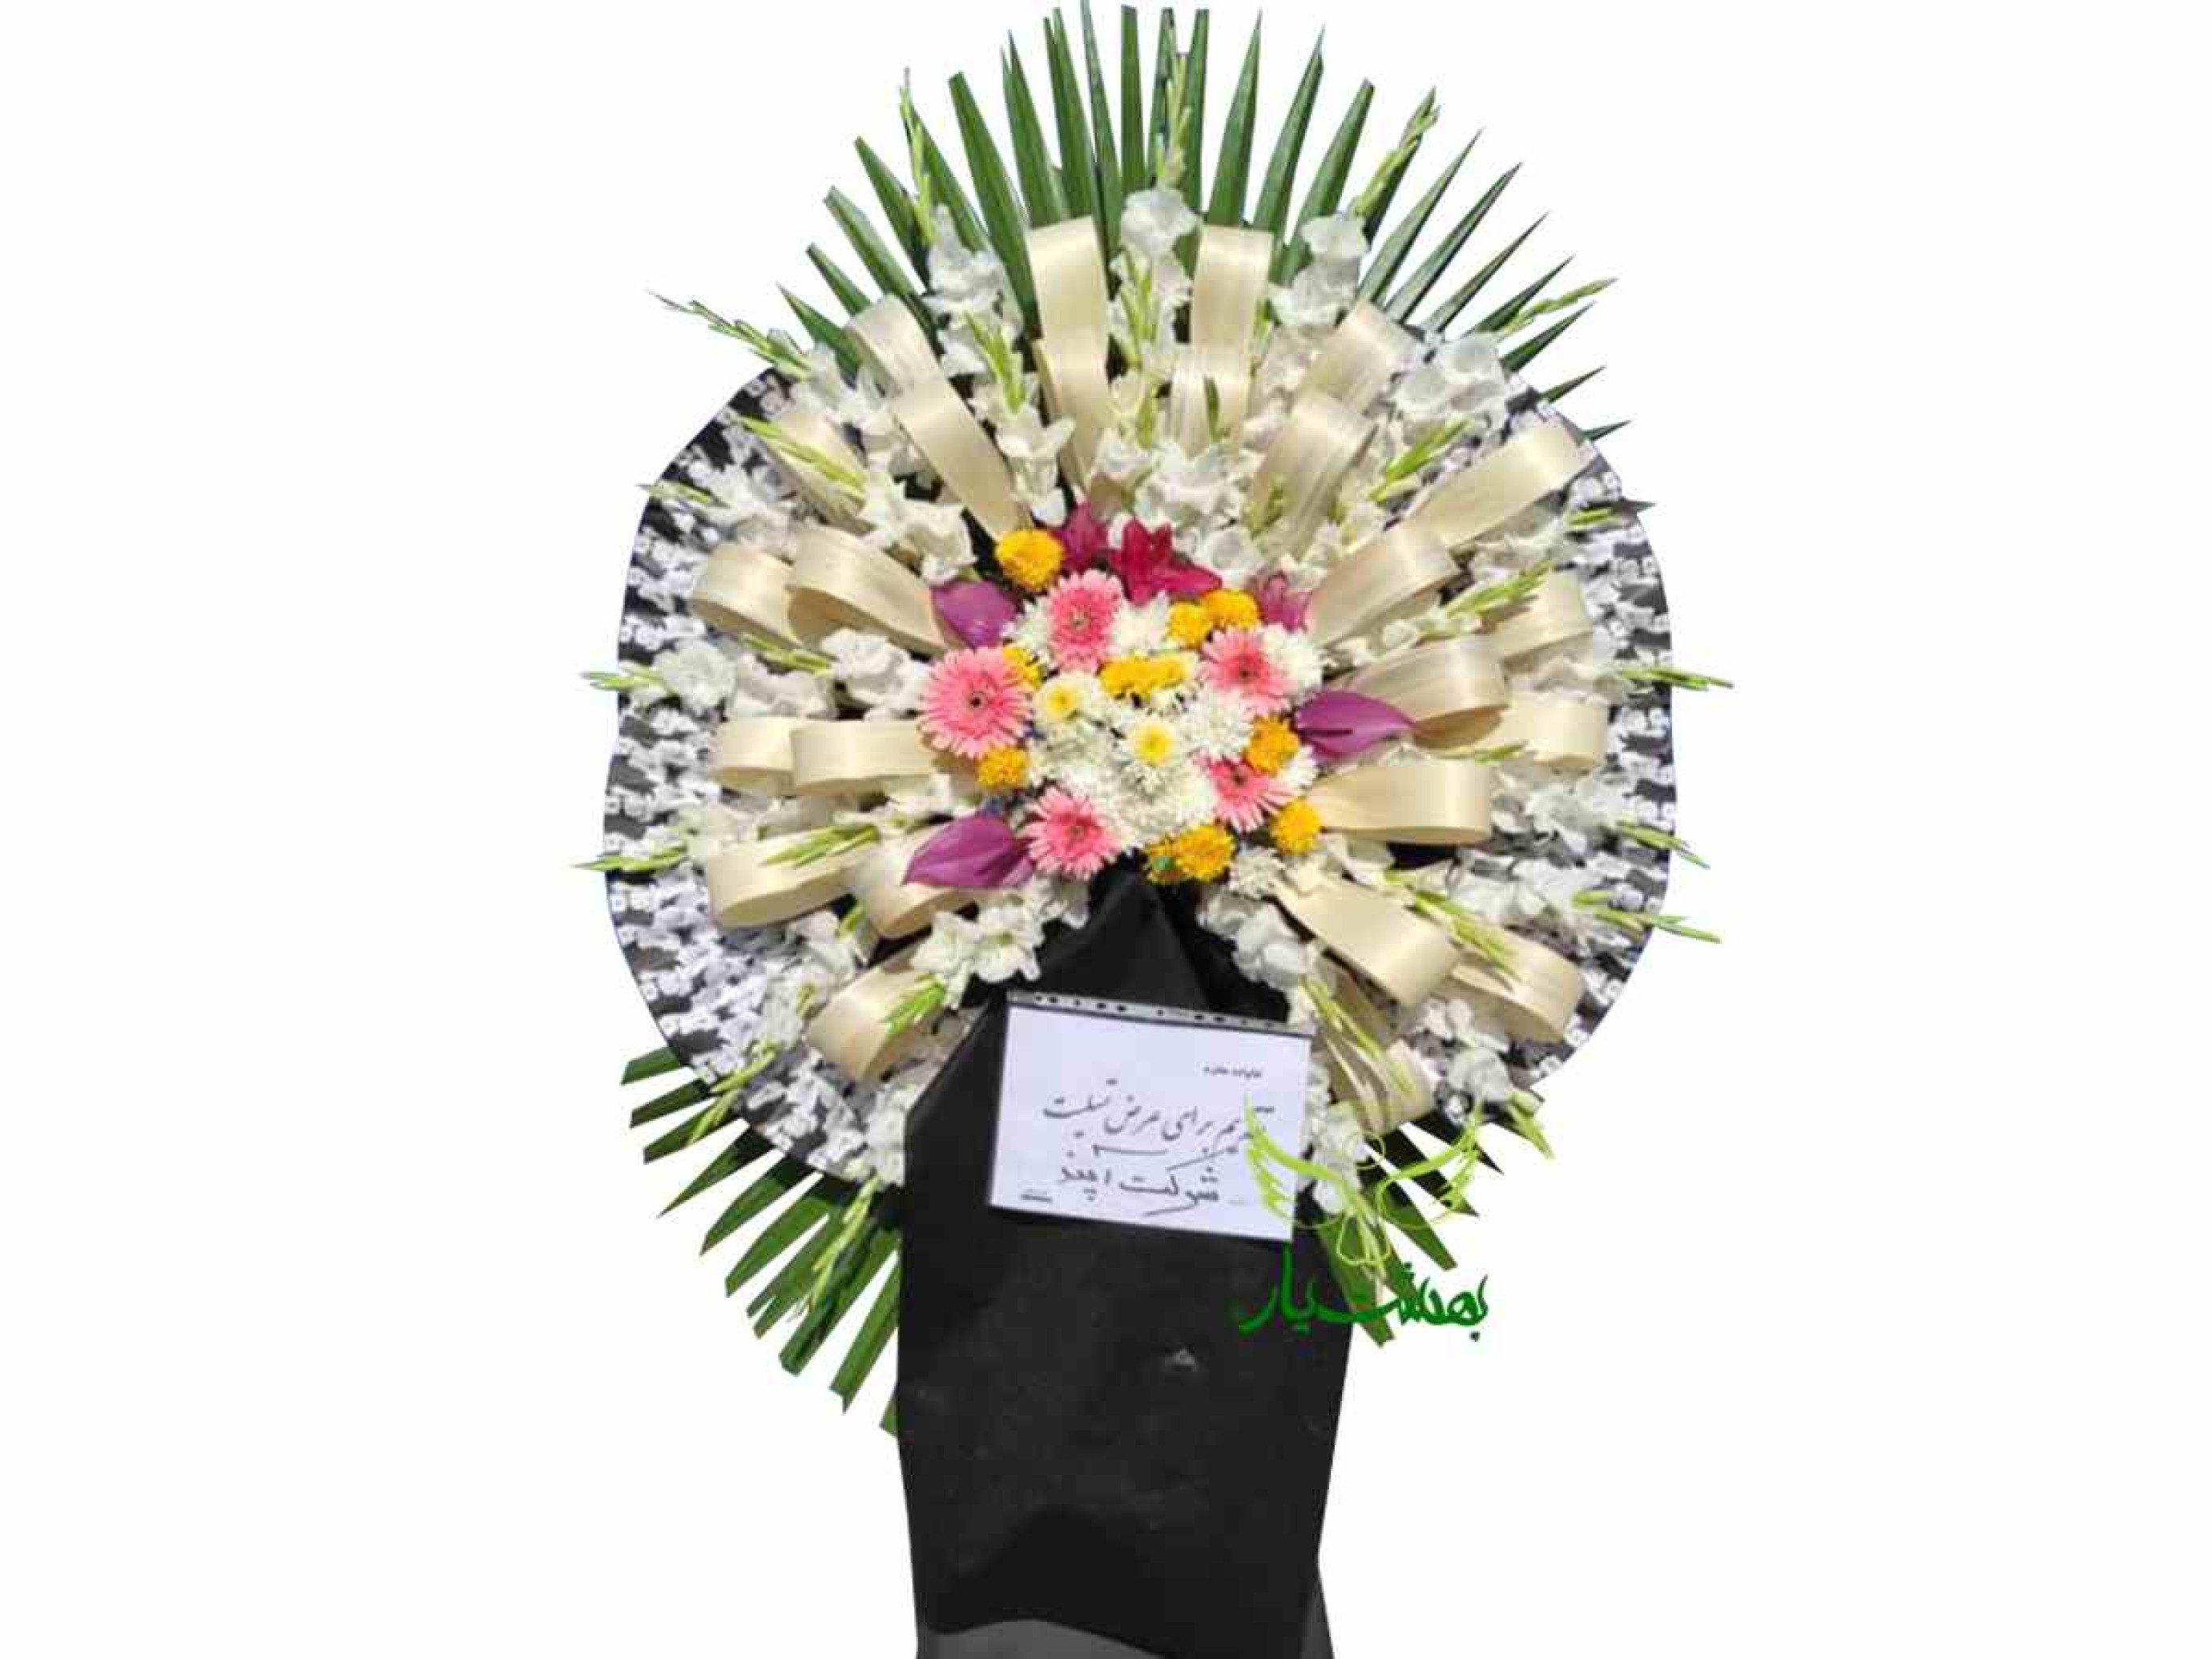  خرید اینترنتی تاج گل ارزان برای بهشت زهرا با ارسال رایگان در بهشت یار 